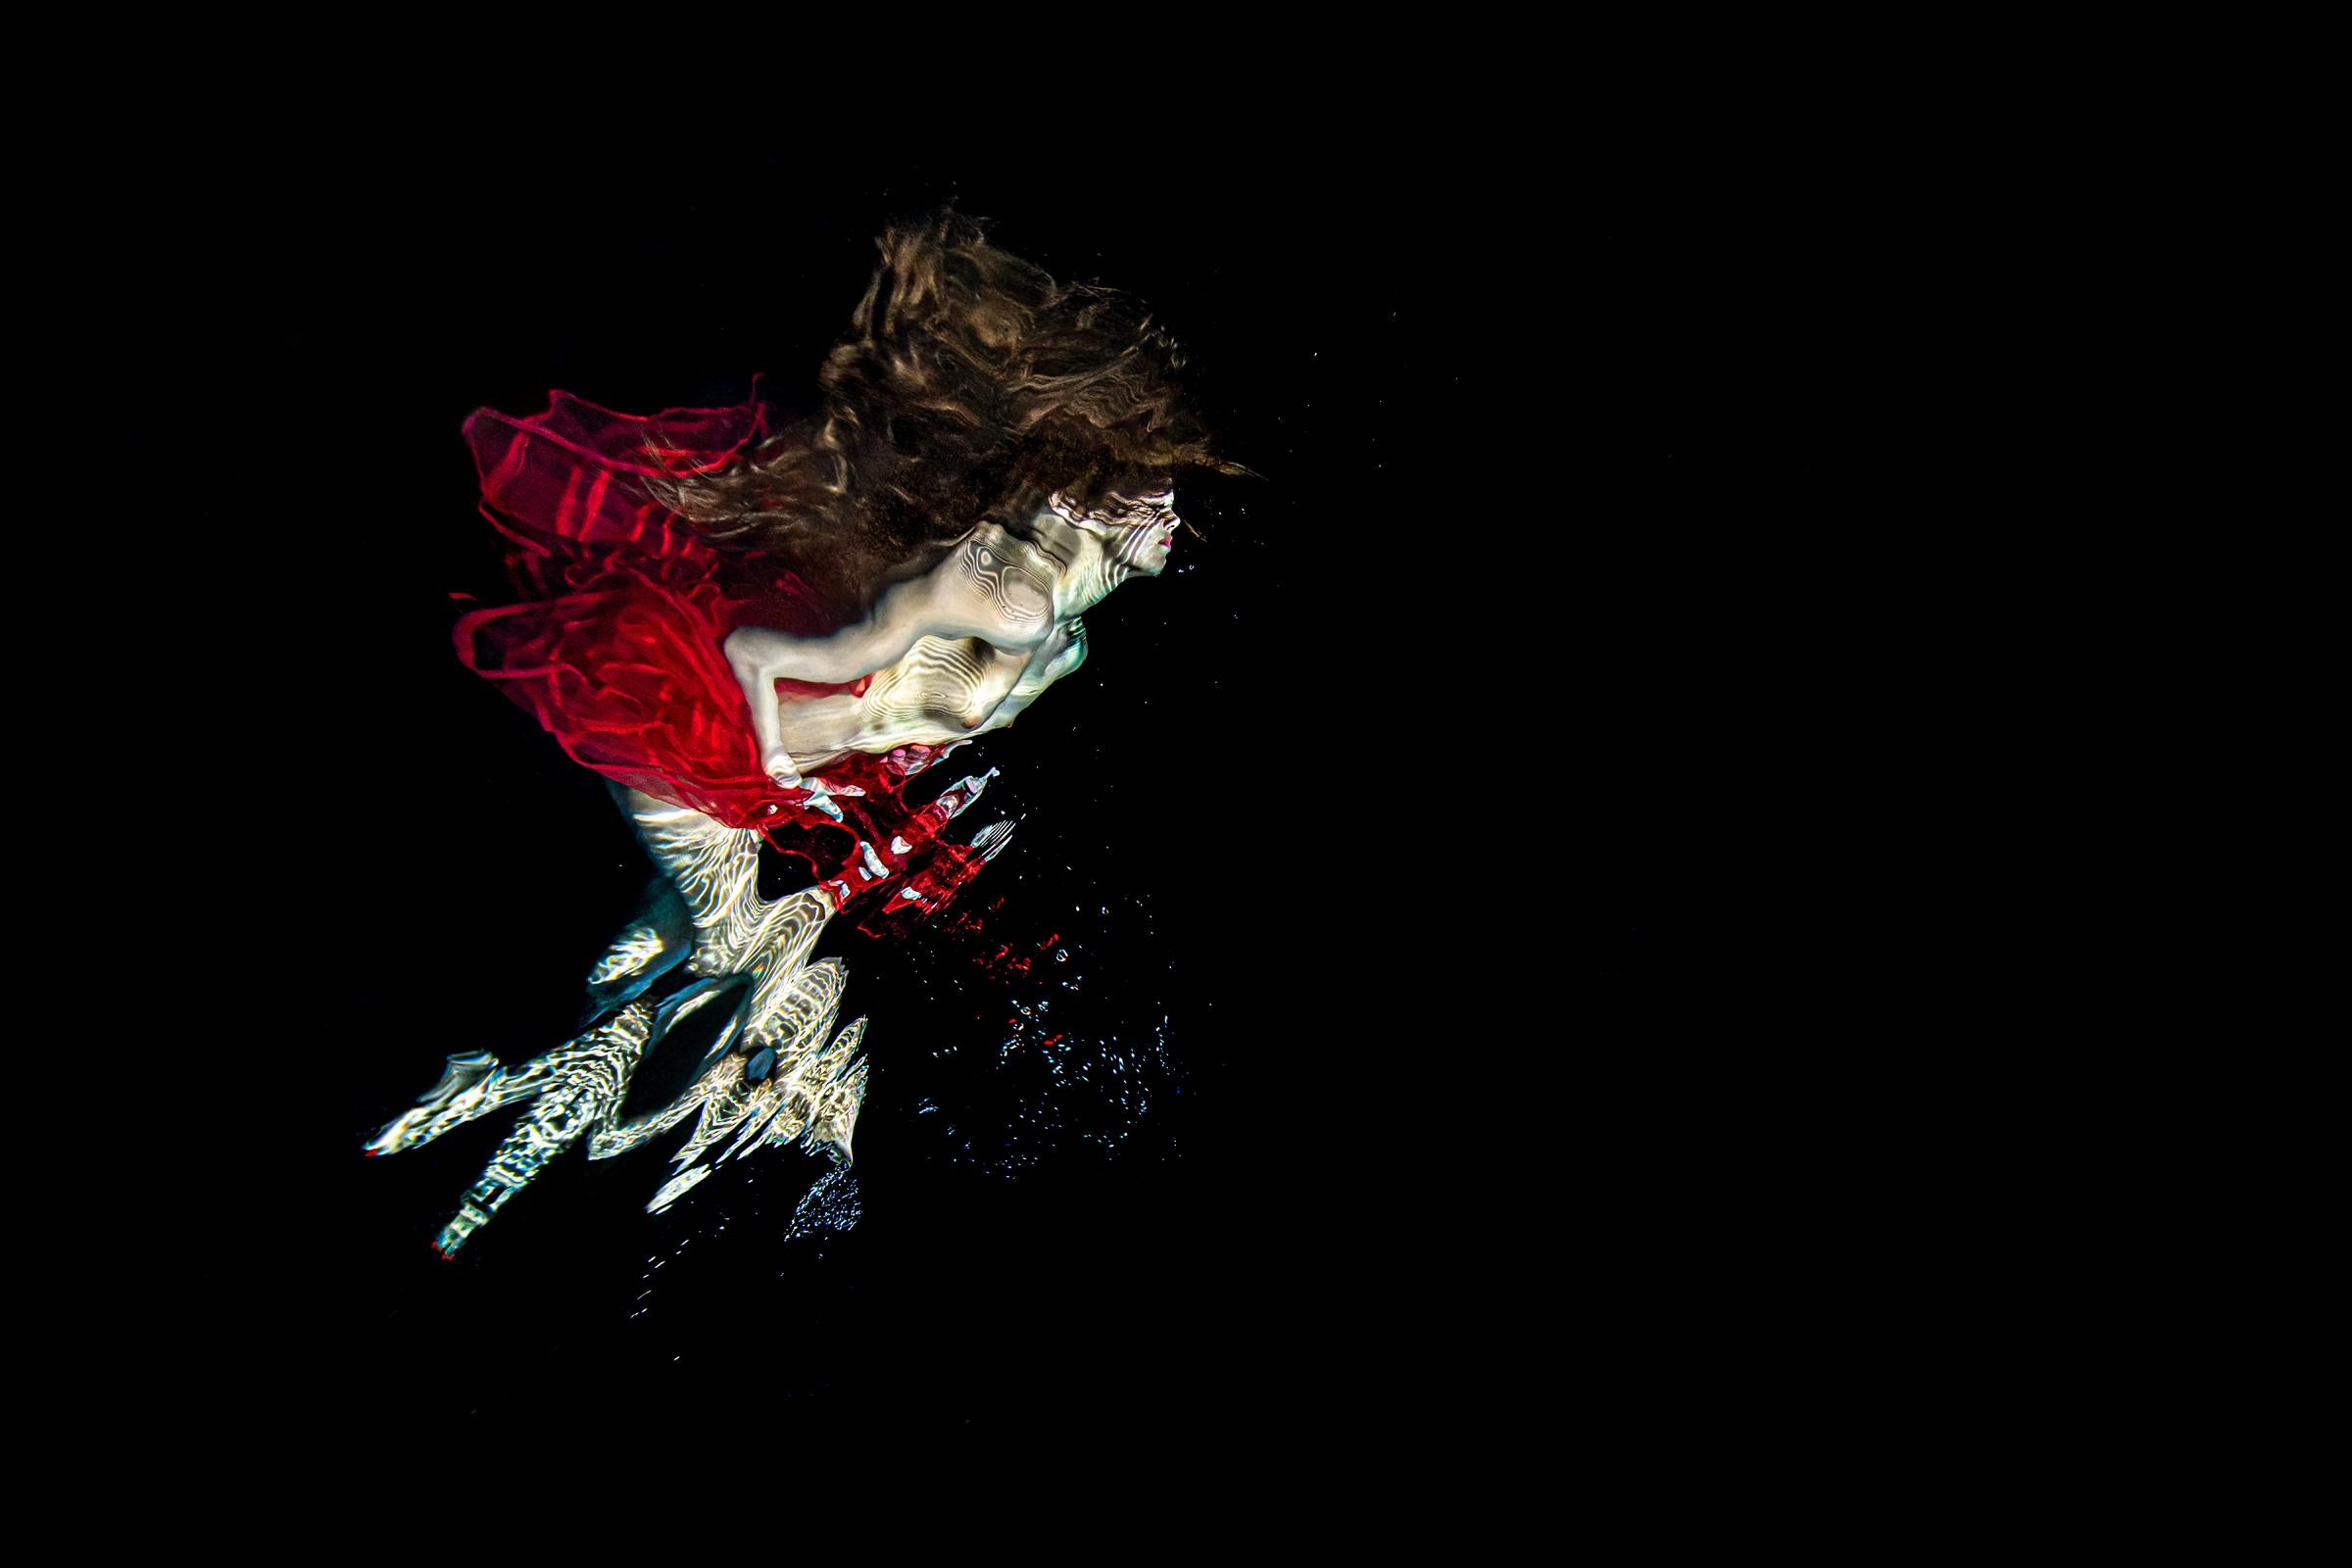 Alex Sher Abstract Photograph – Salsa – Unterwasserfotografie aus der Serie REFLECTIONS – Druck auf Aluminium 24x36"